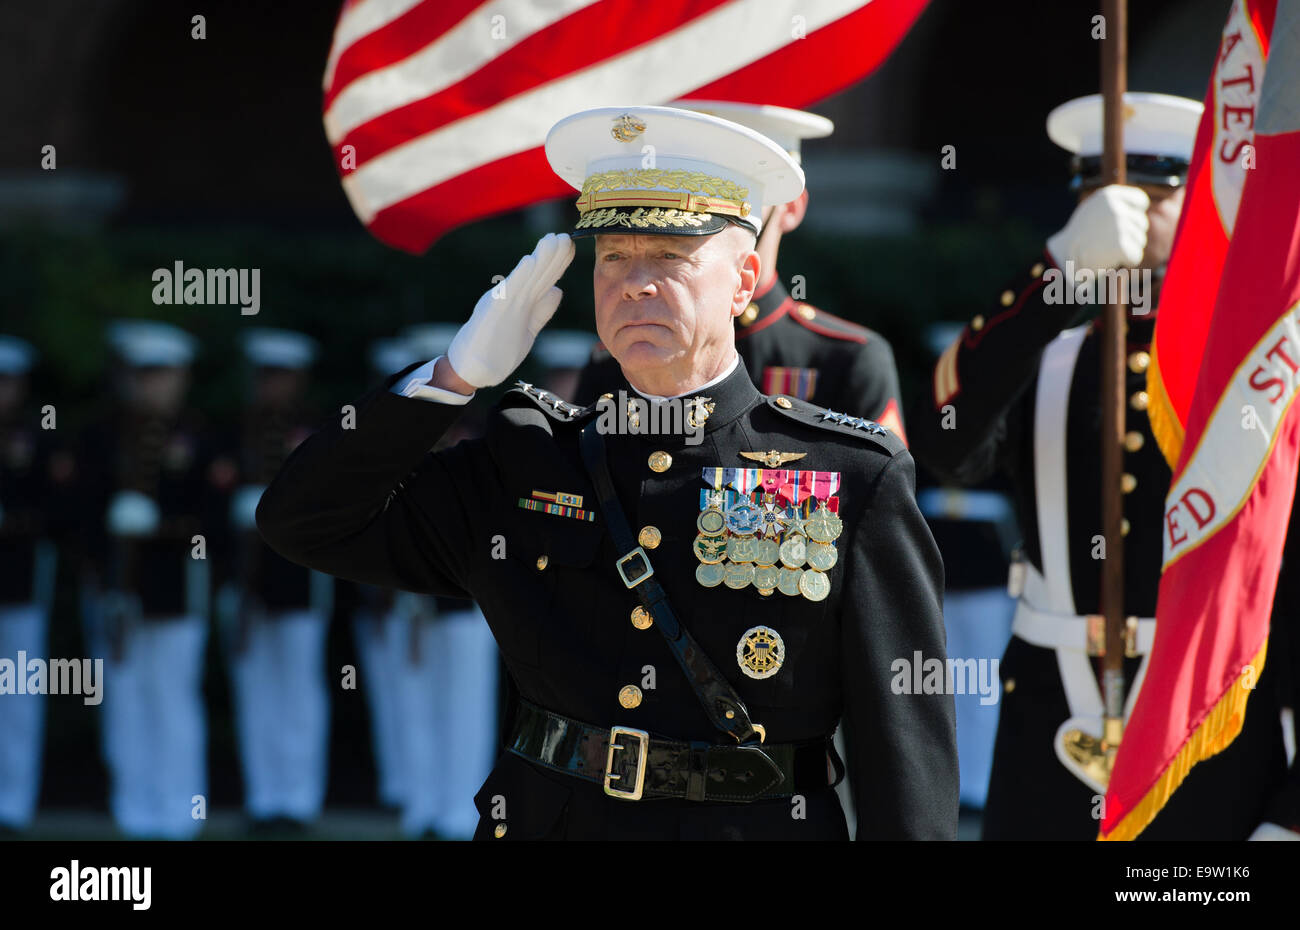 Cuerpo de Marines de EE.UU General James F. Amos, el comandante saliente de la Infantería de Marina, saluda durante un cambio de mando y la ceremonia de jubilación en el cuartel de los Marines Washington en Washington, D.C., 17 de octubre de 2014. Amós cesó oficialmente el mando de Marin Foto de stock